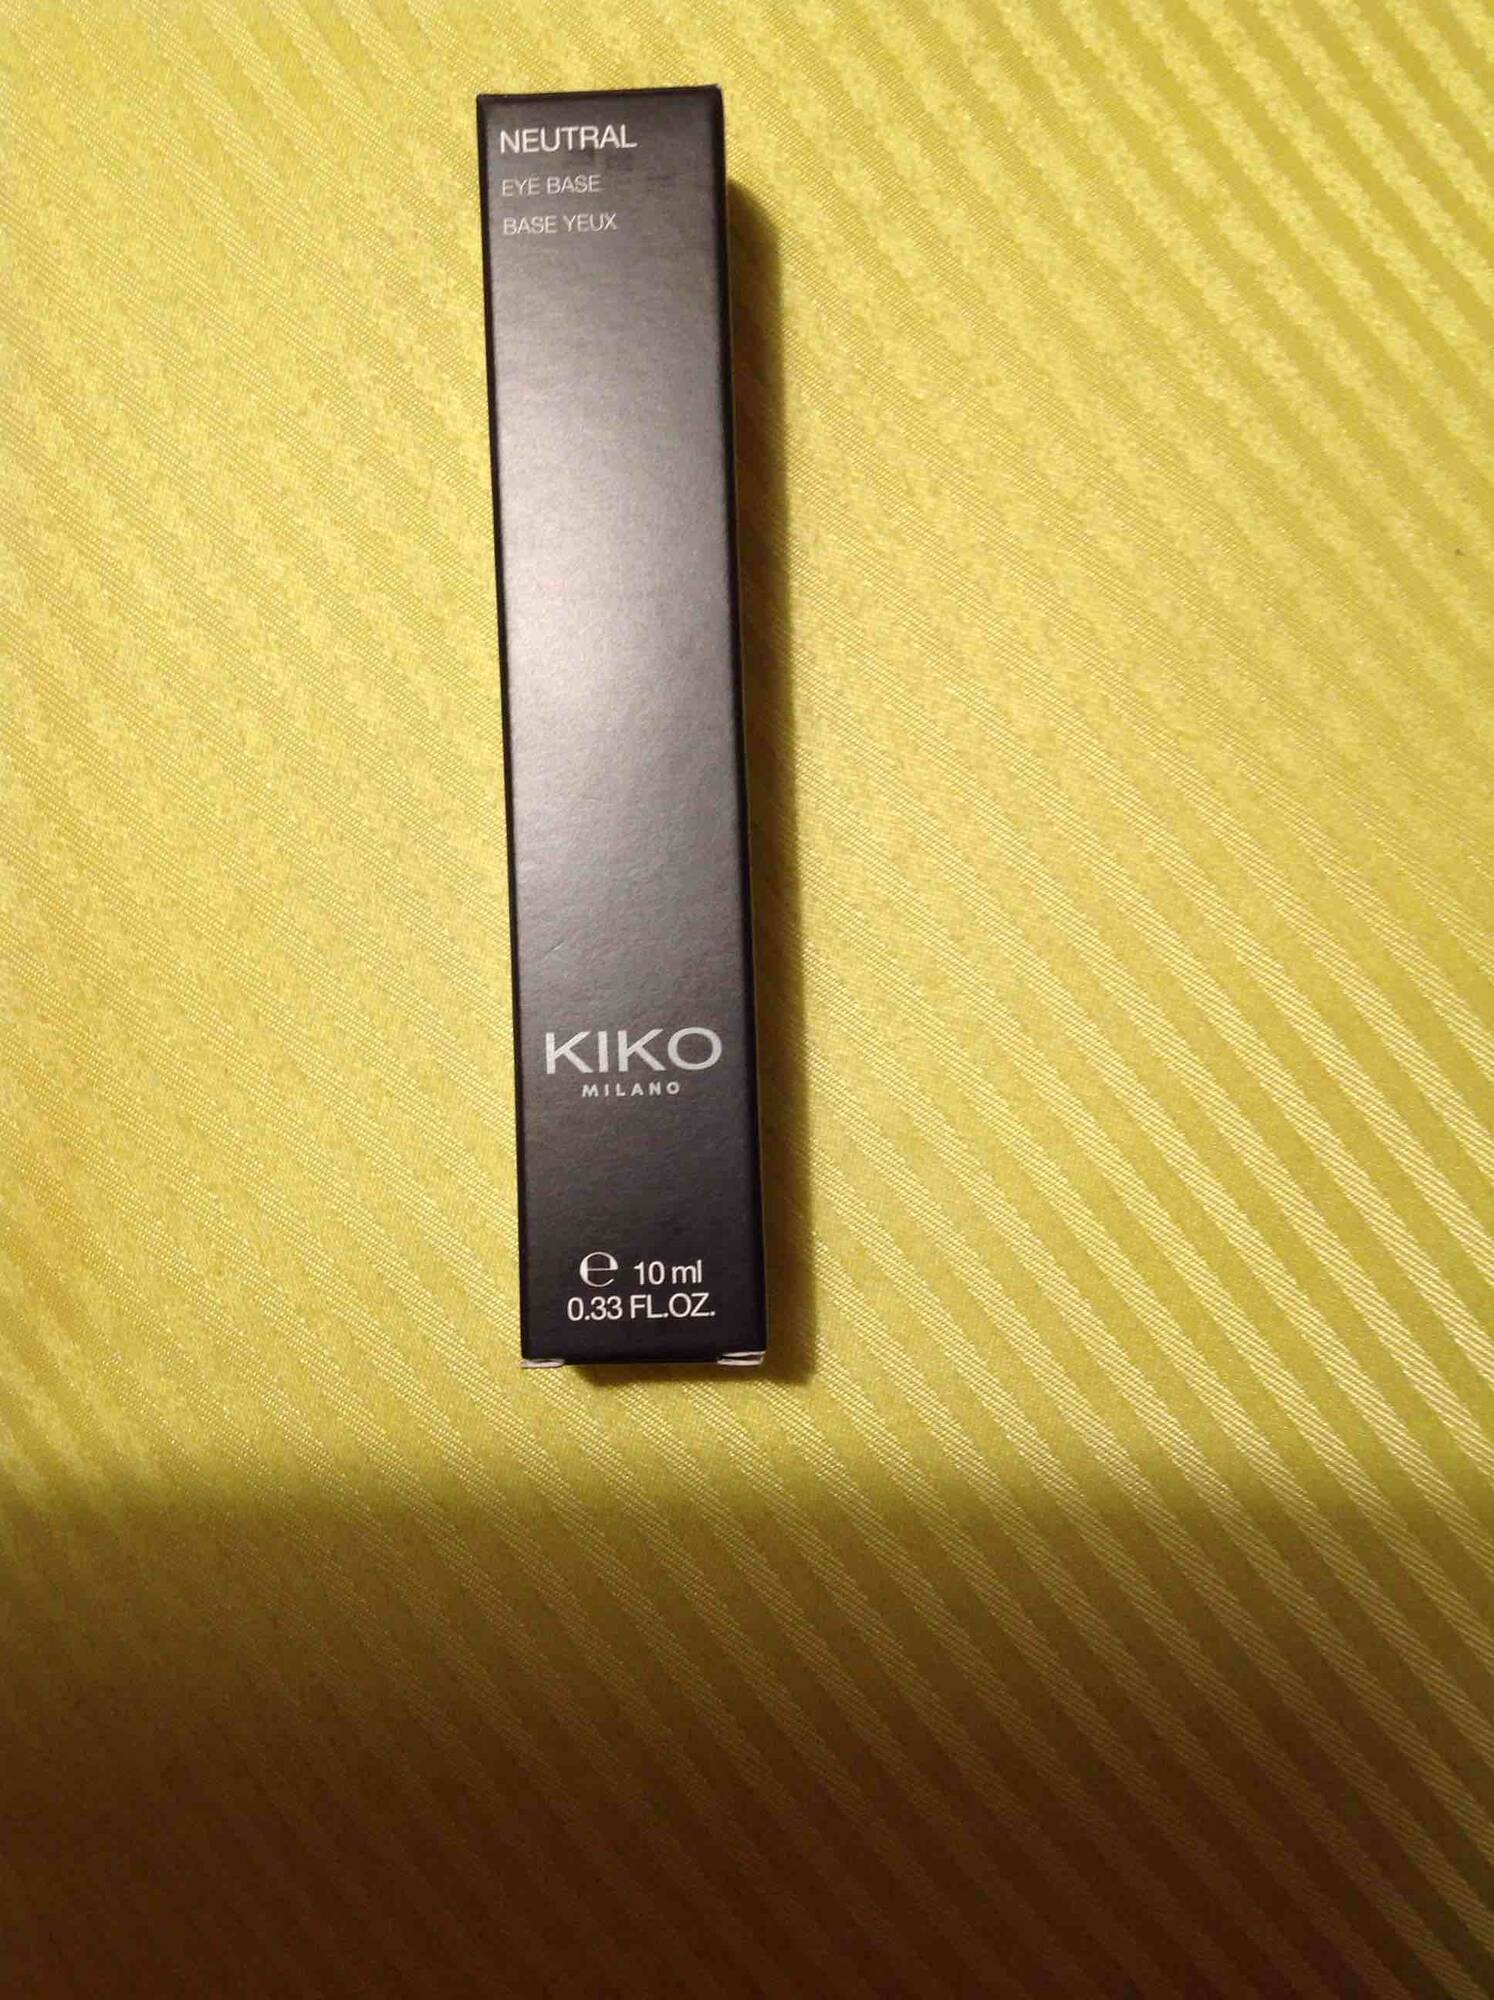 KIKO - Neutral - Base yeux